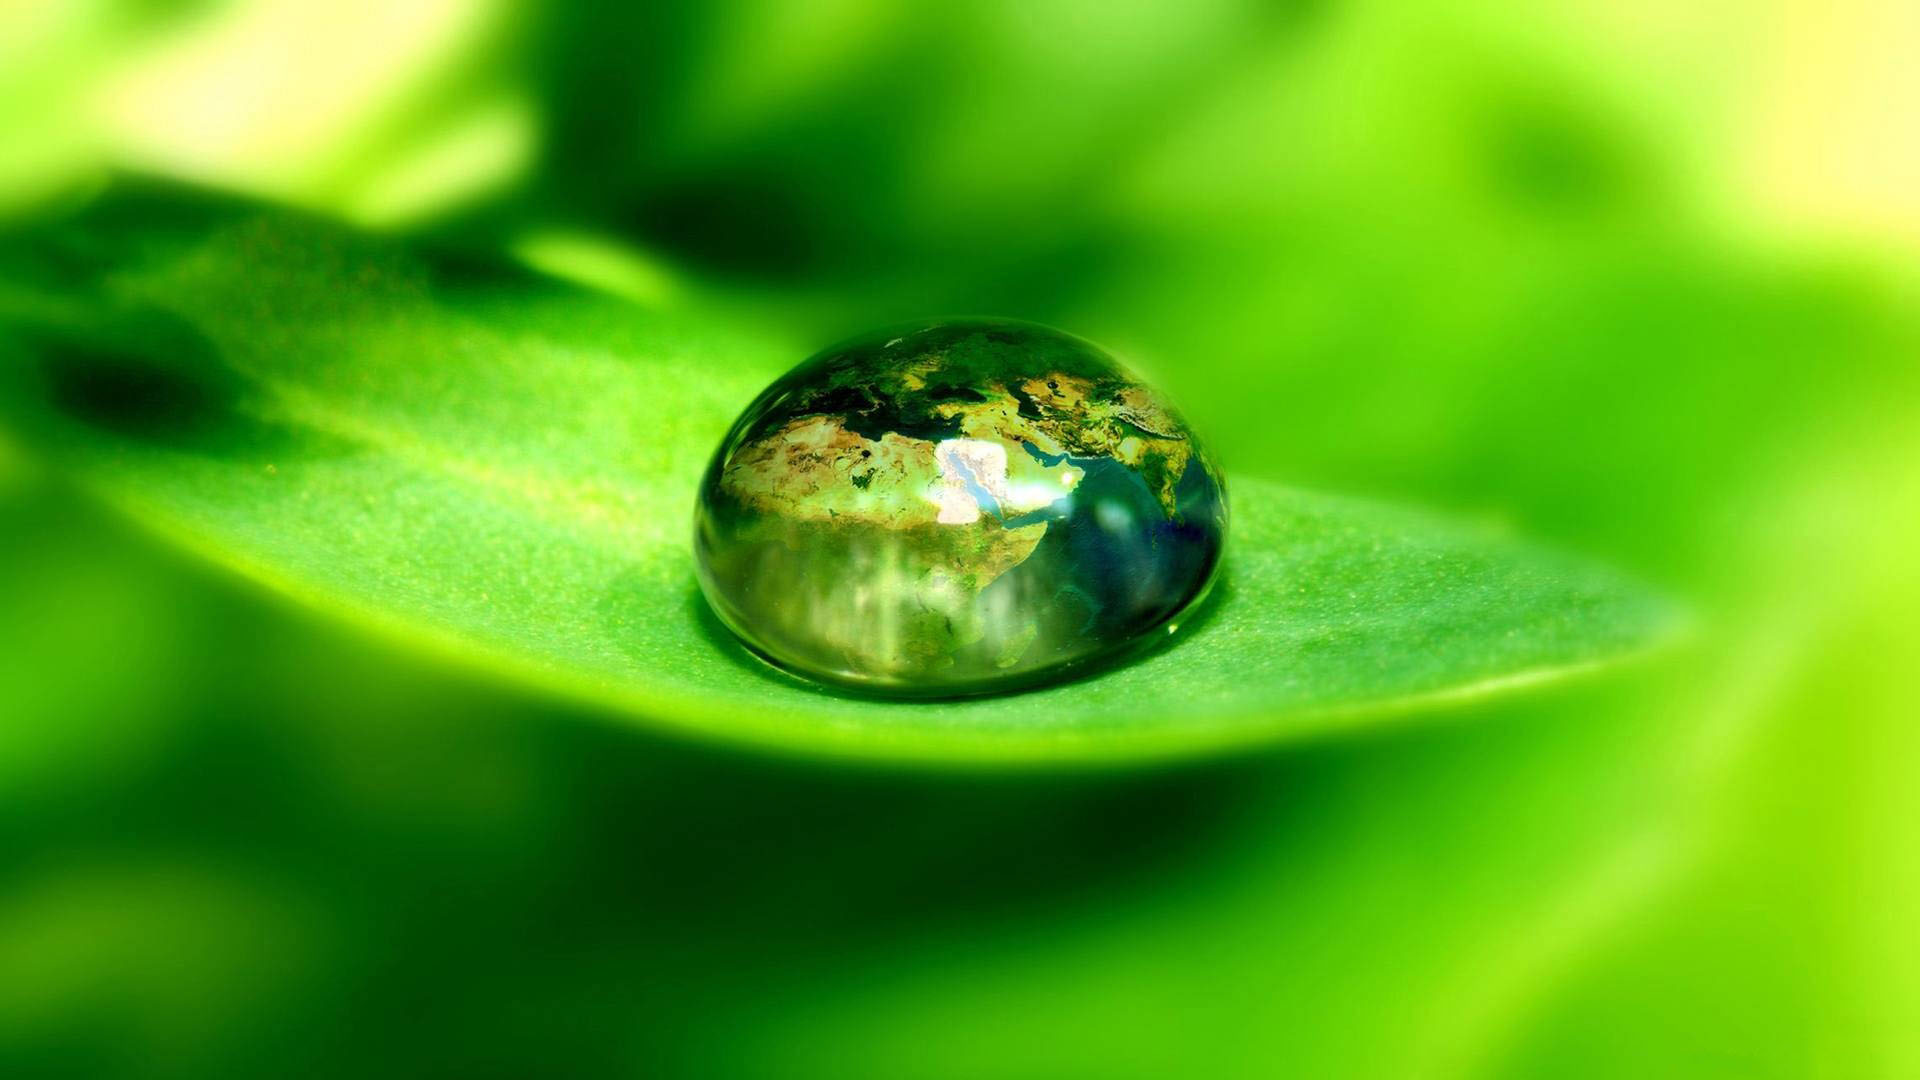 Water Drop on Leaf Wallpaper
